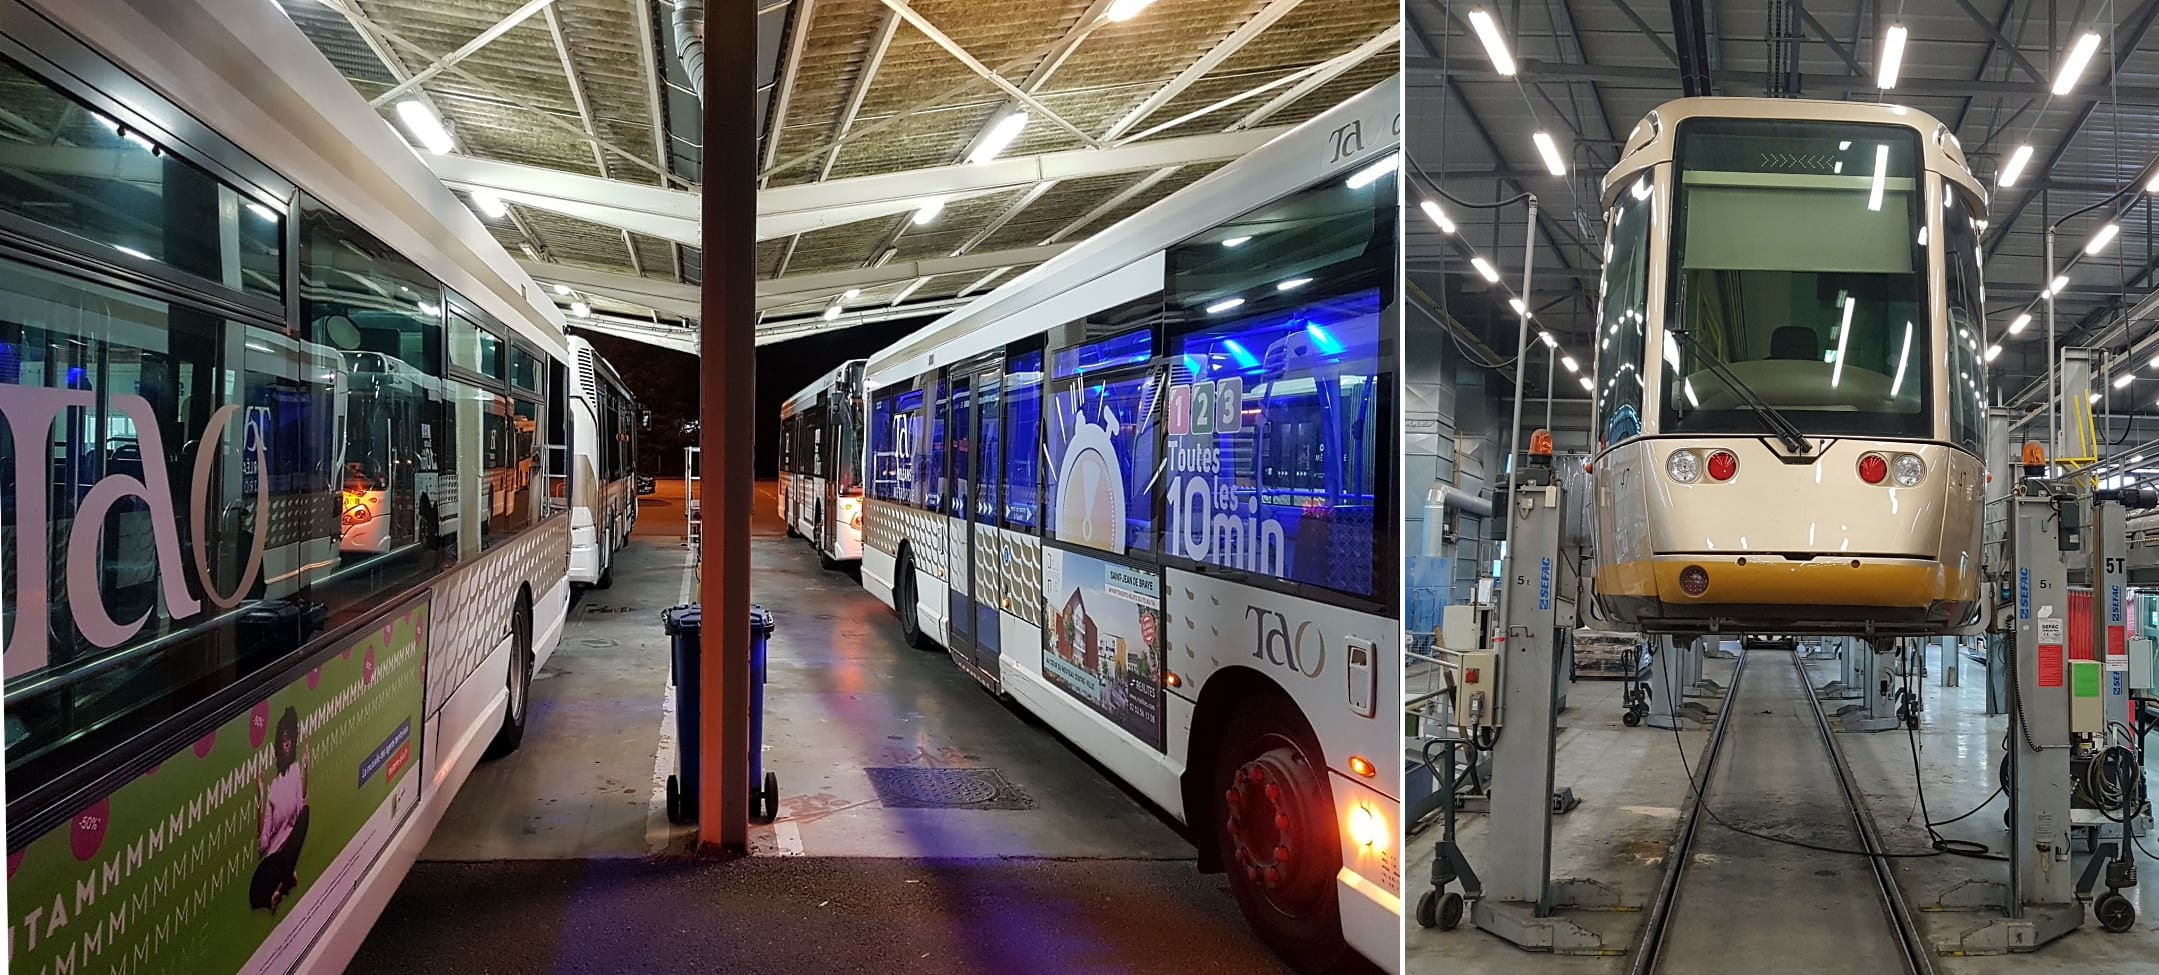 Dépôt de bus TAO Orléans la Source 2019